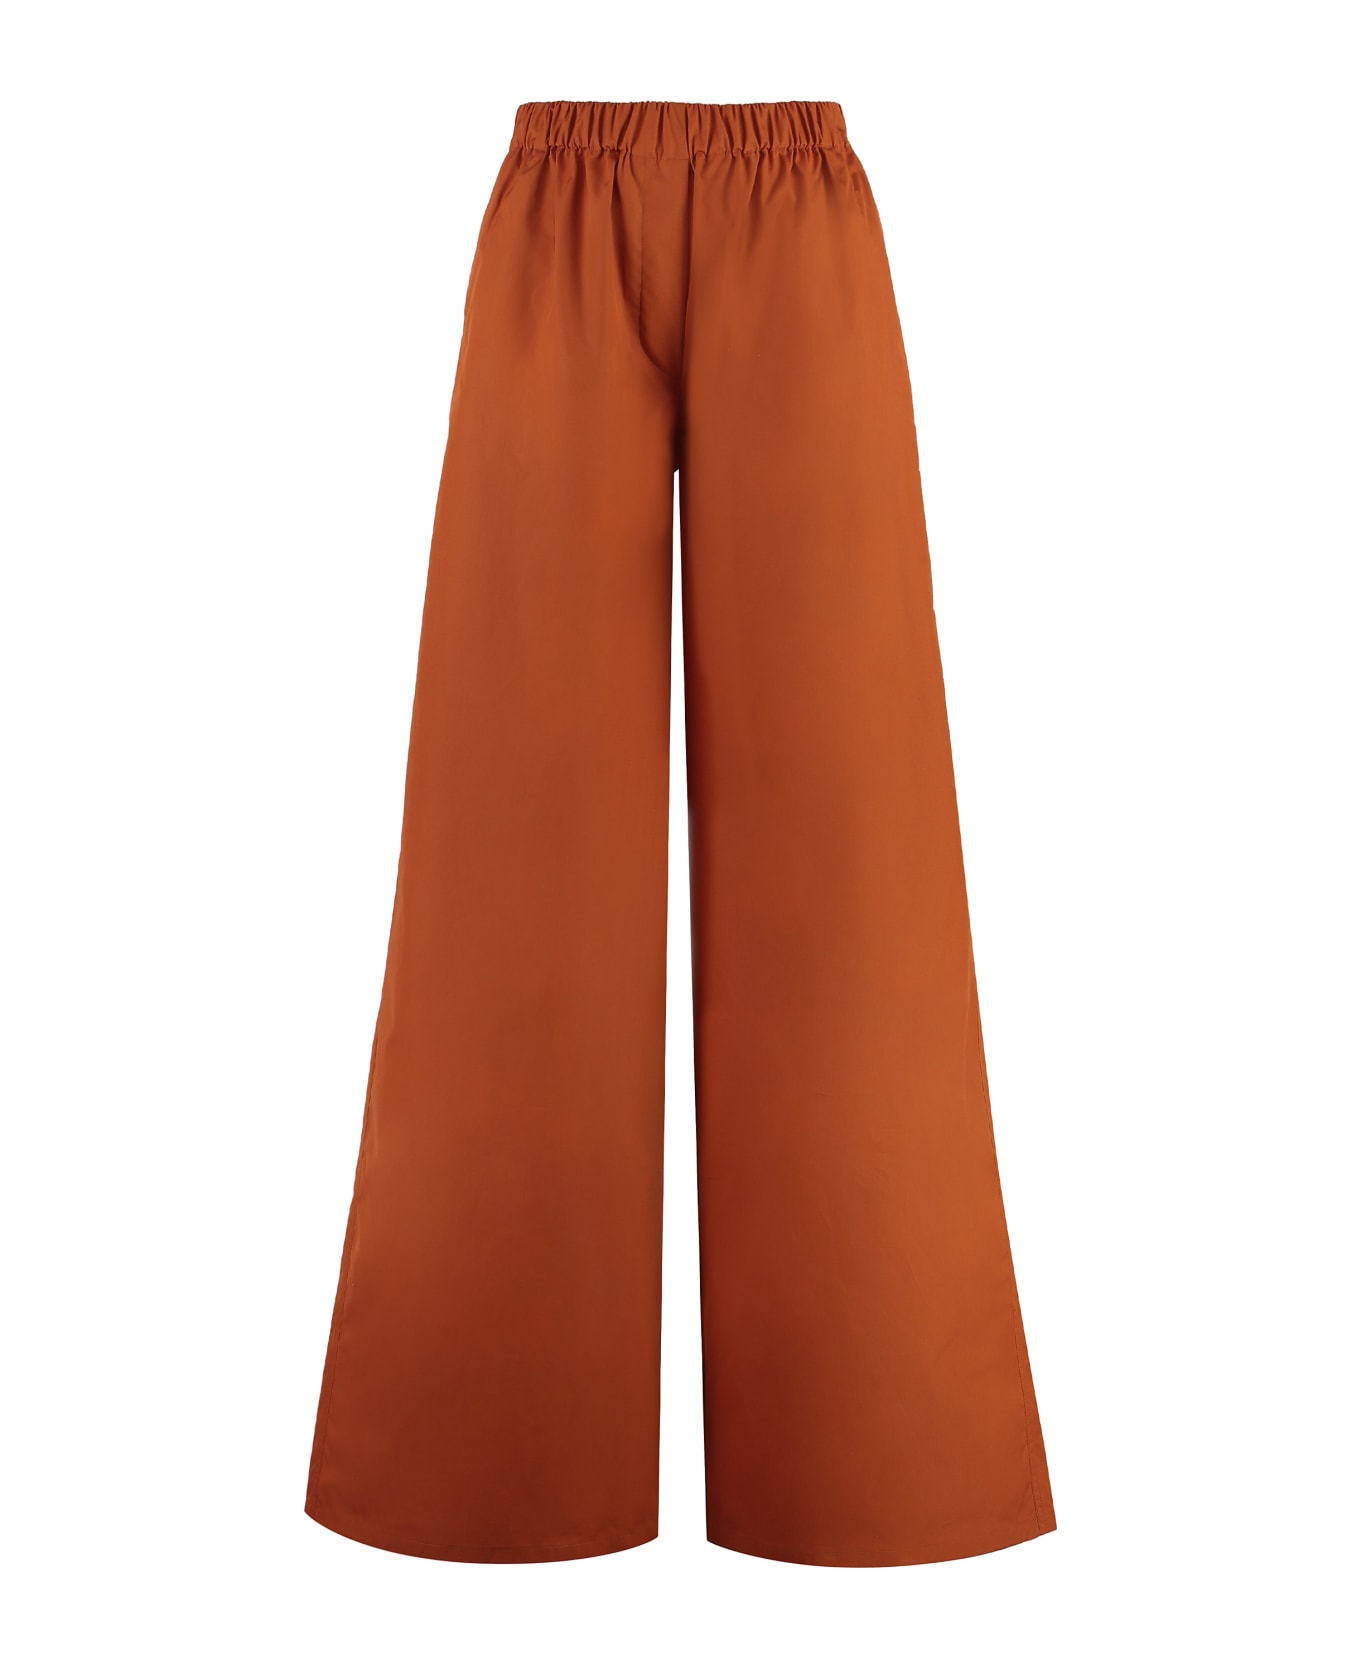 Max Mara Navigli Cotton Trousers - Brown